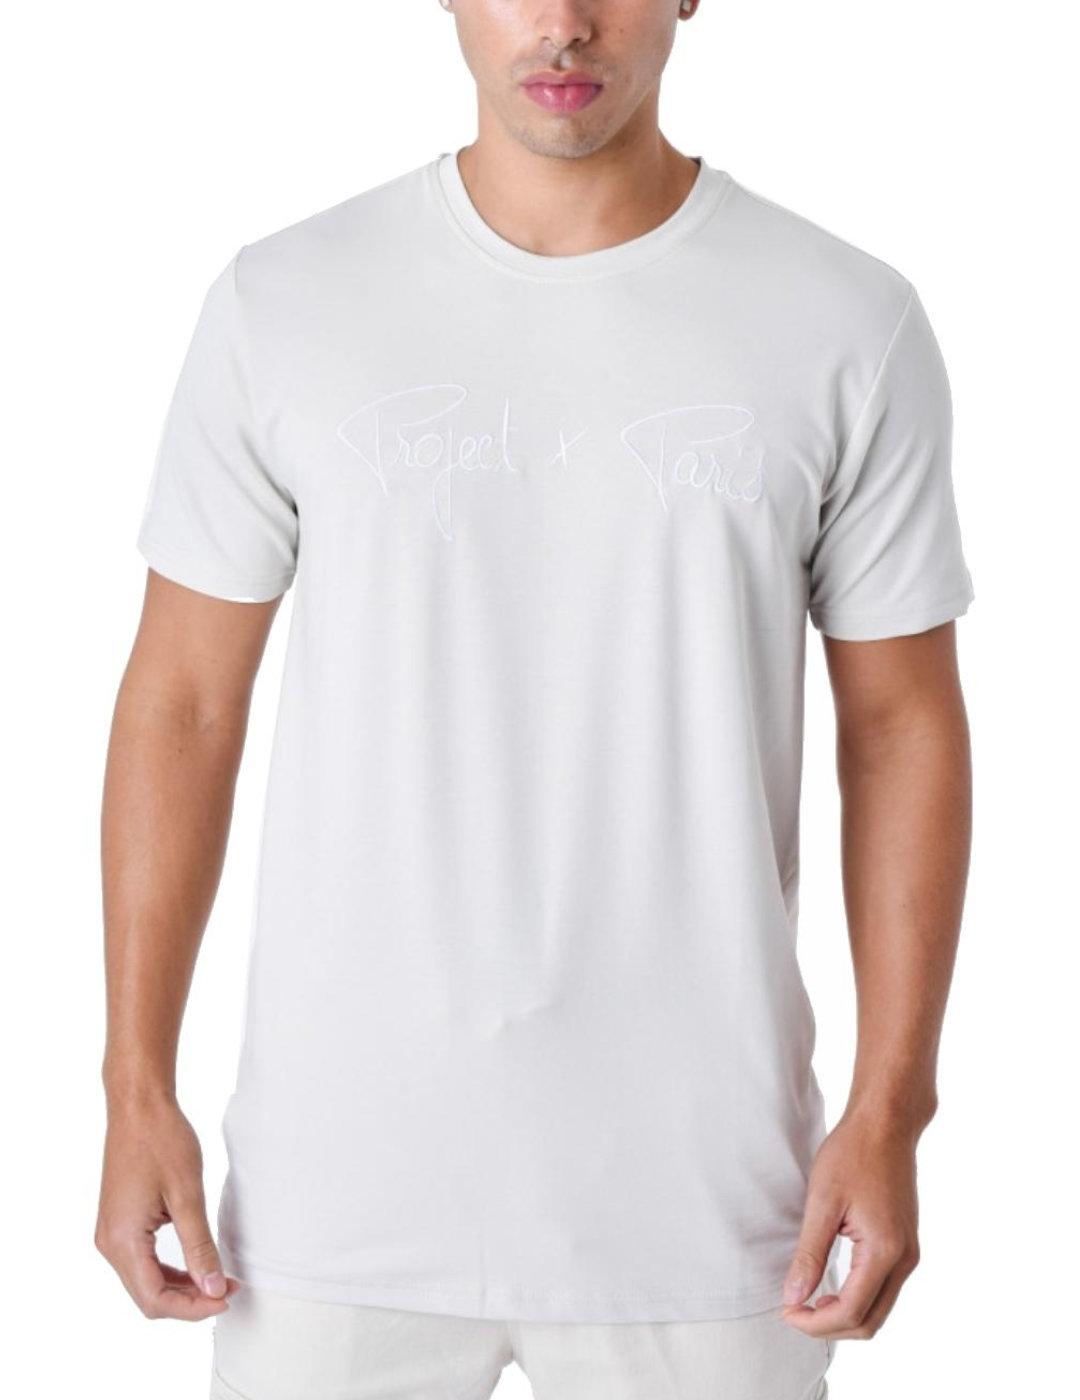 Camiseta ProjectxParis gris logo blanco manga corta unisex